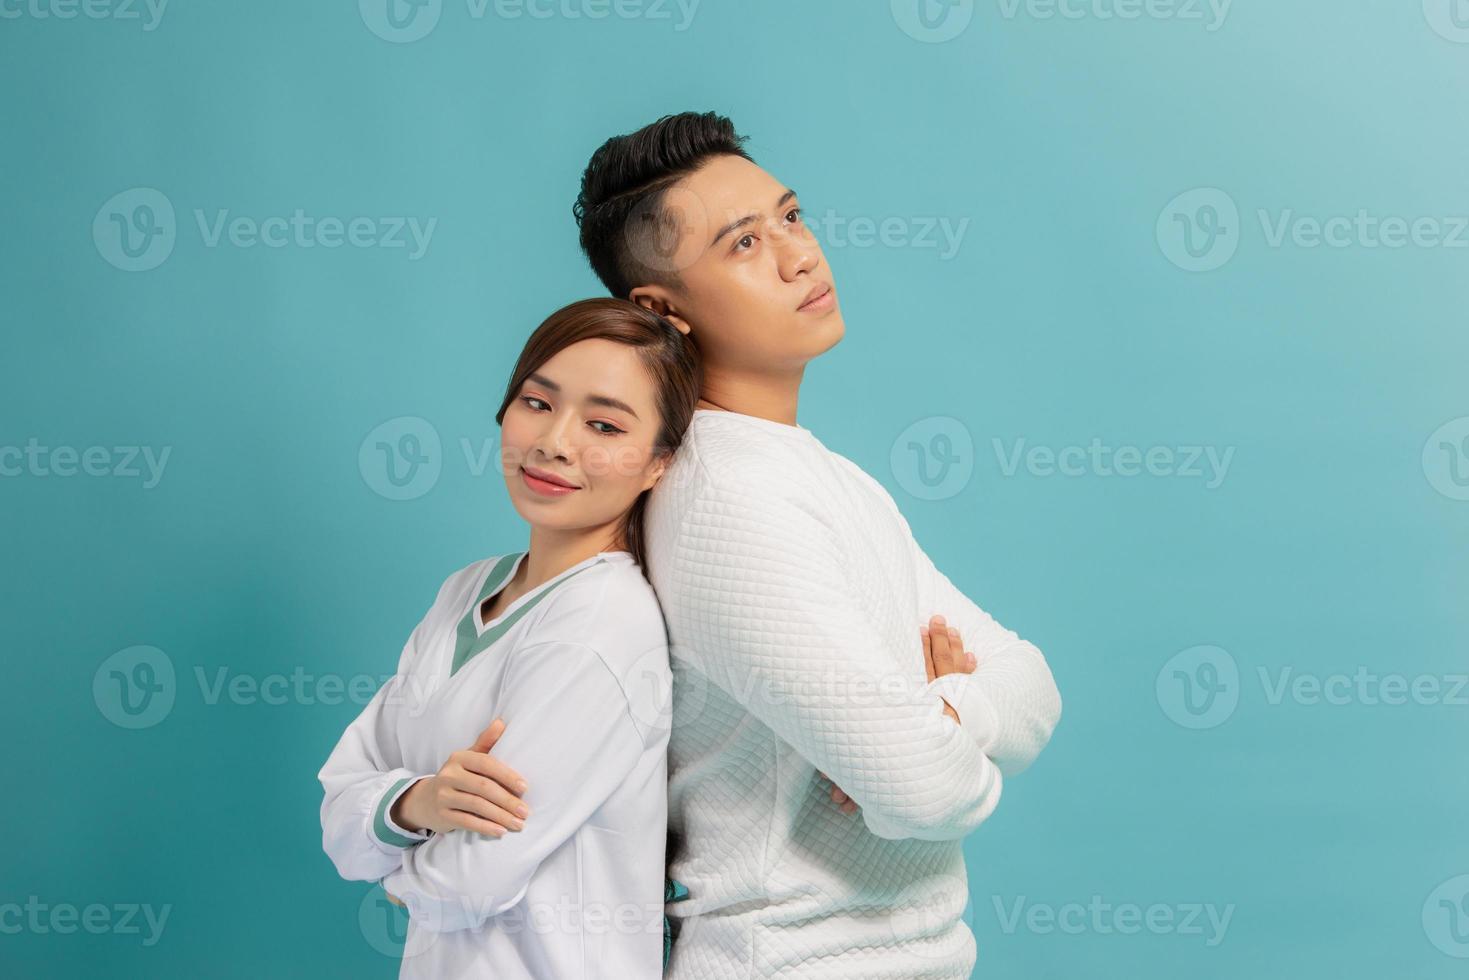 foto de estúdio de lindo casal feliz mantendo as mãos cruzadas no peito e rindo alegremente em pé sobre fundo azul